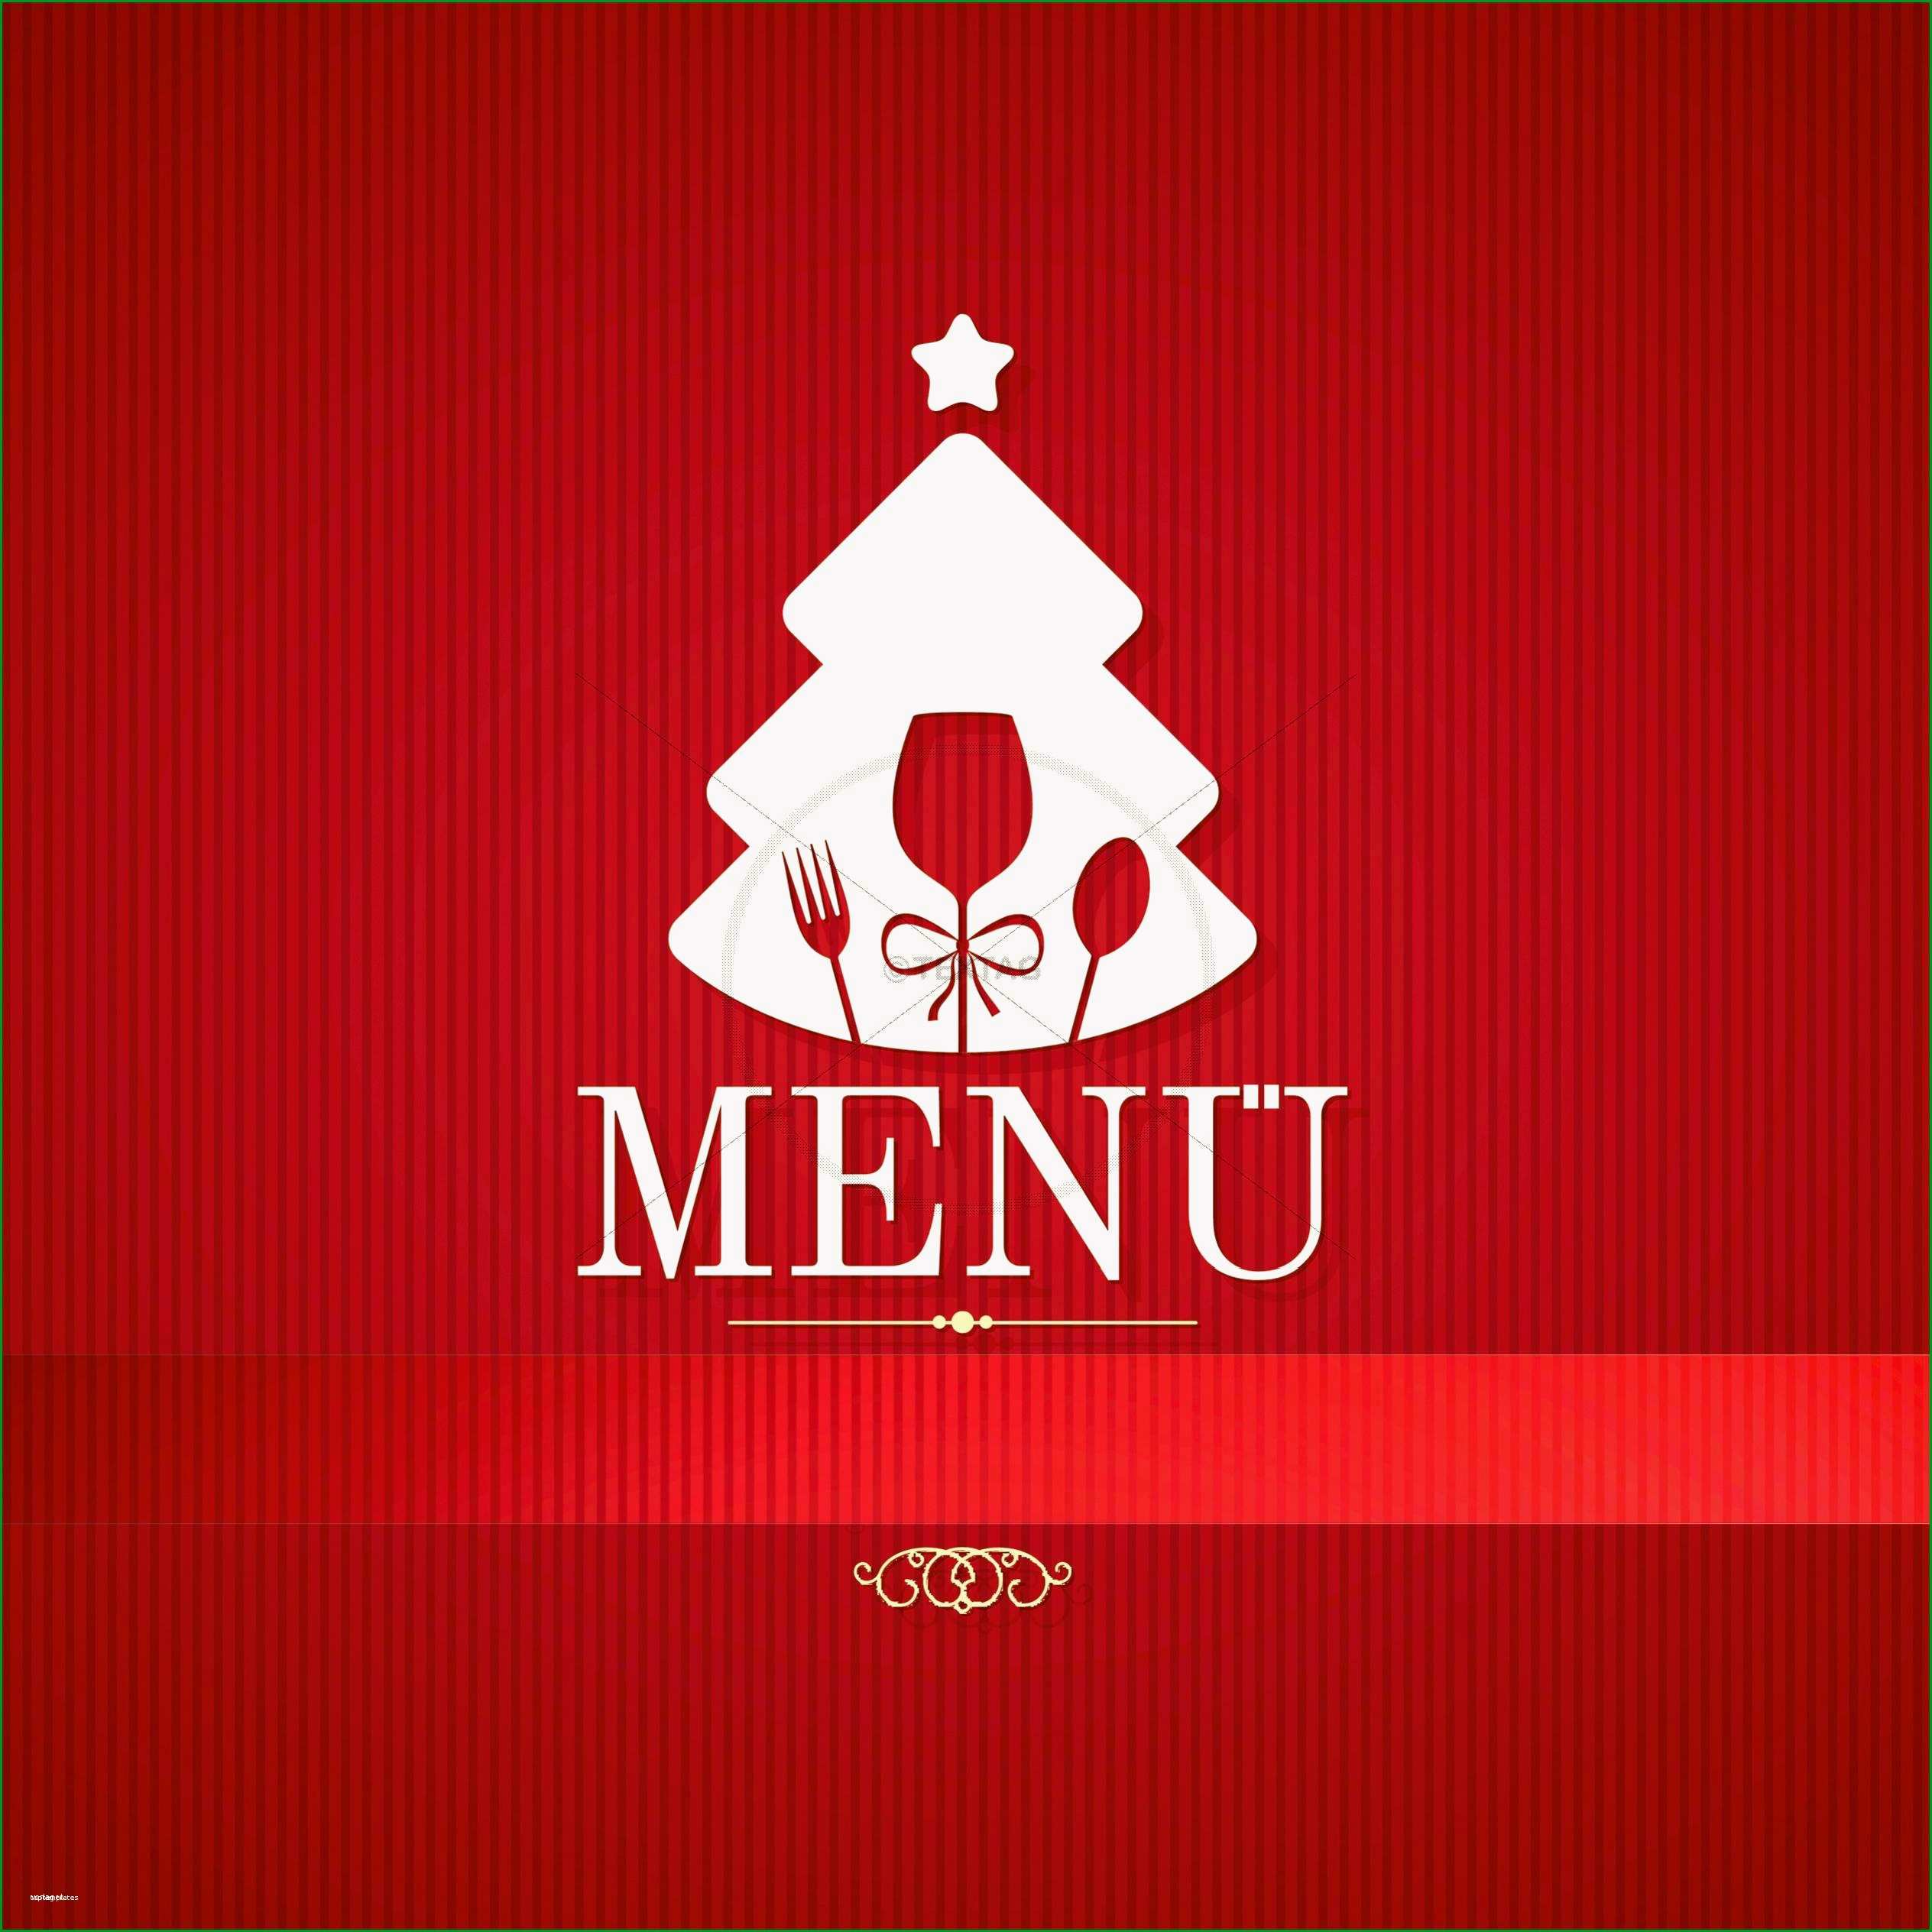 menukarten vorlagen kostenlos ausdrucken elegante speisekarte fur weihnachten word vorlage menukarte fur